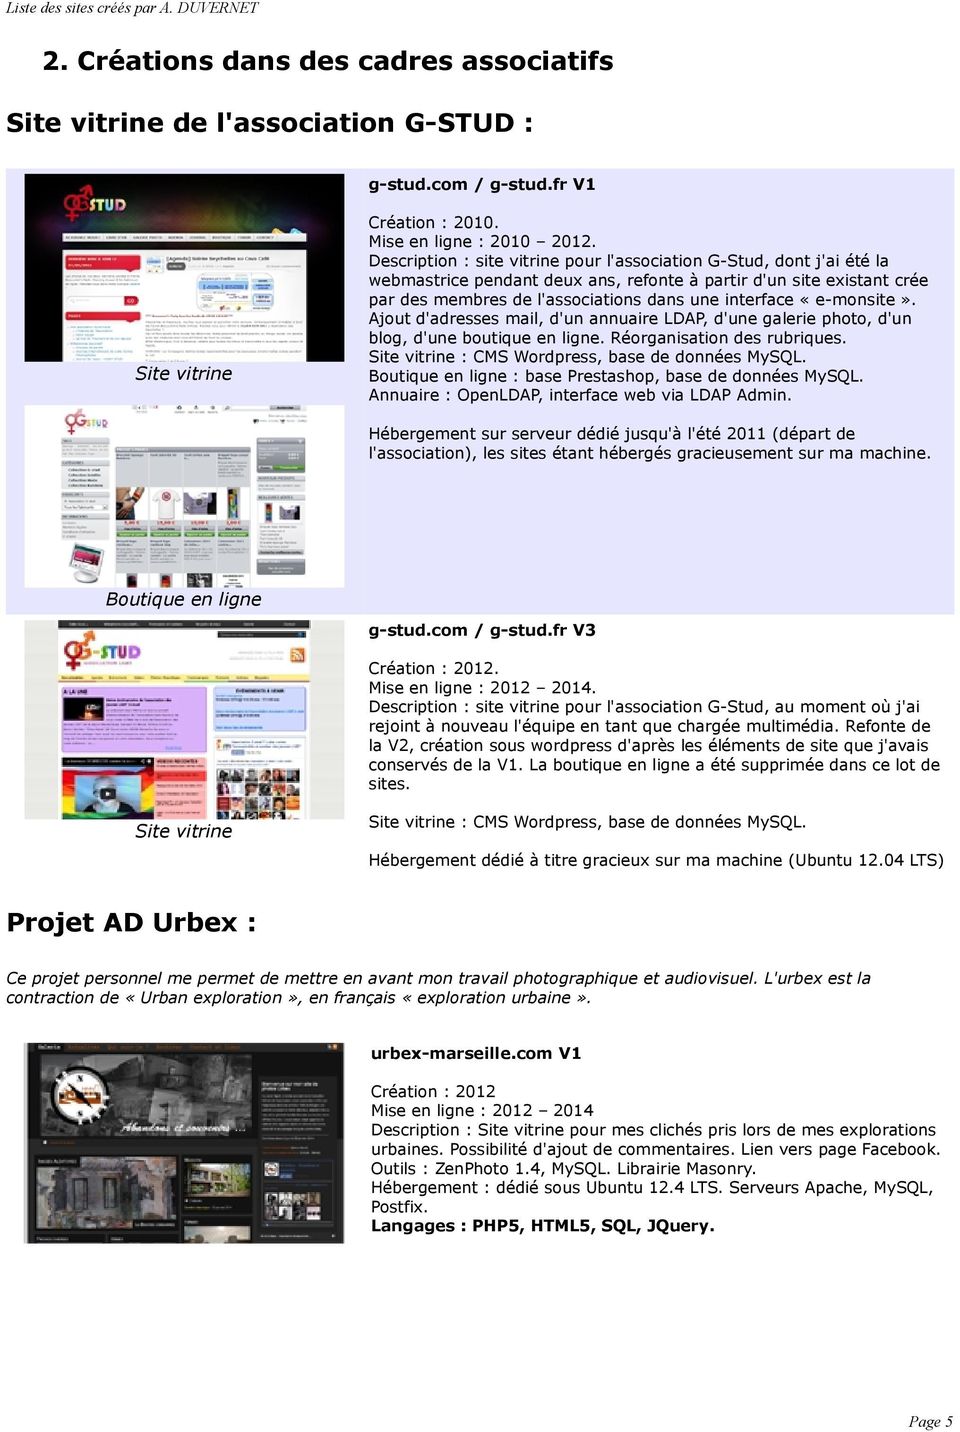 «e-monsite». Ajout d'adresses mail, d'un annuaire LDAP, d'une galerie photo, d'un blog, d'une boutique en ligne. Réorganisation des rubriques. Site vitrine : CMS Wordpress, base de données MySQL.